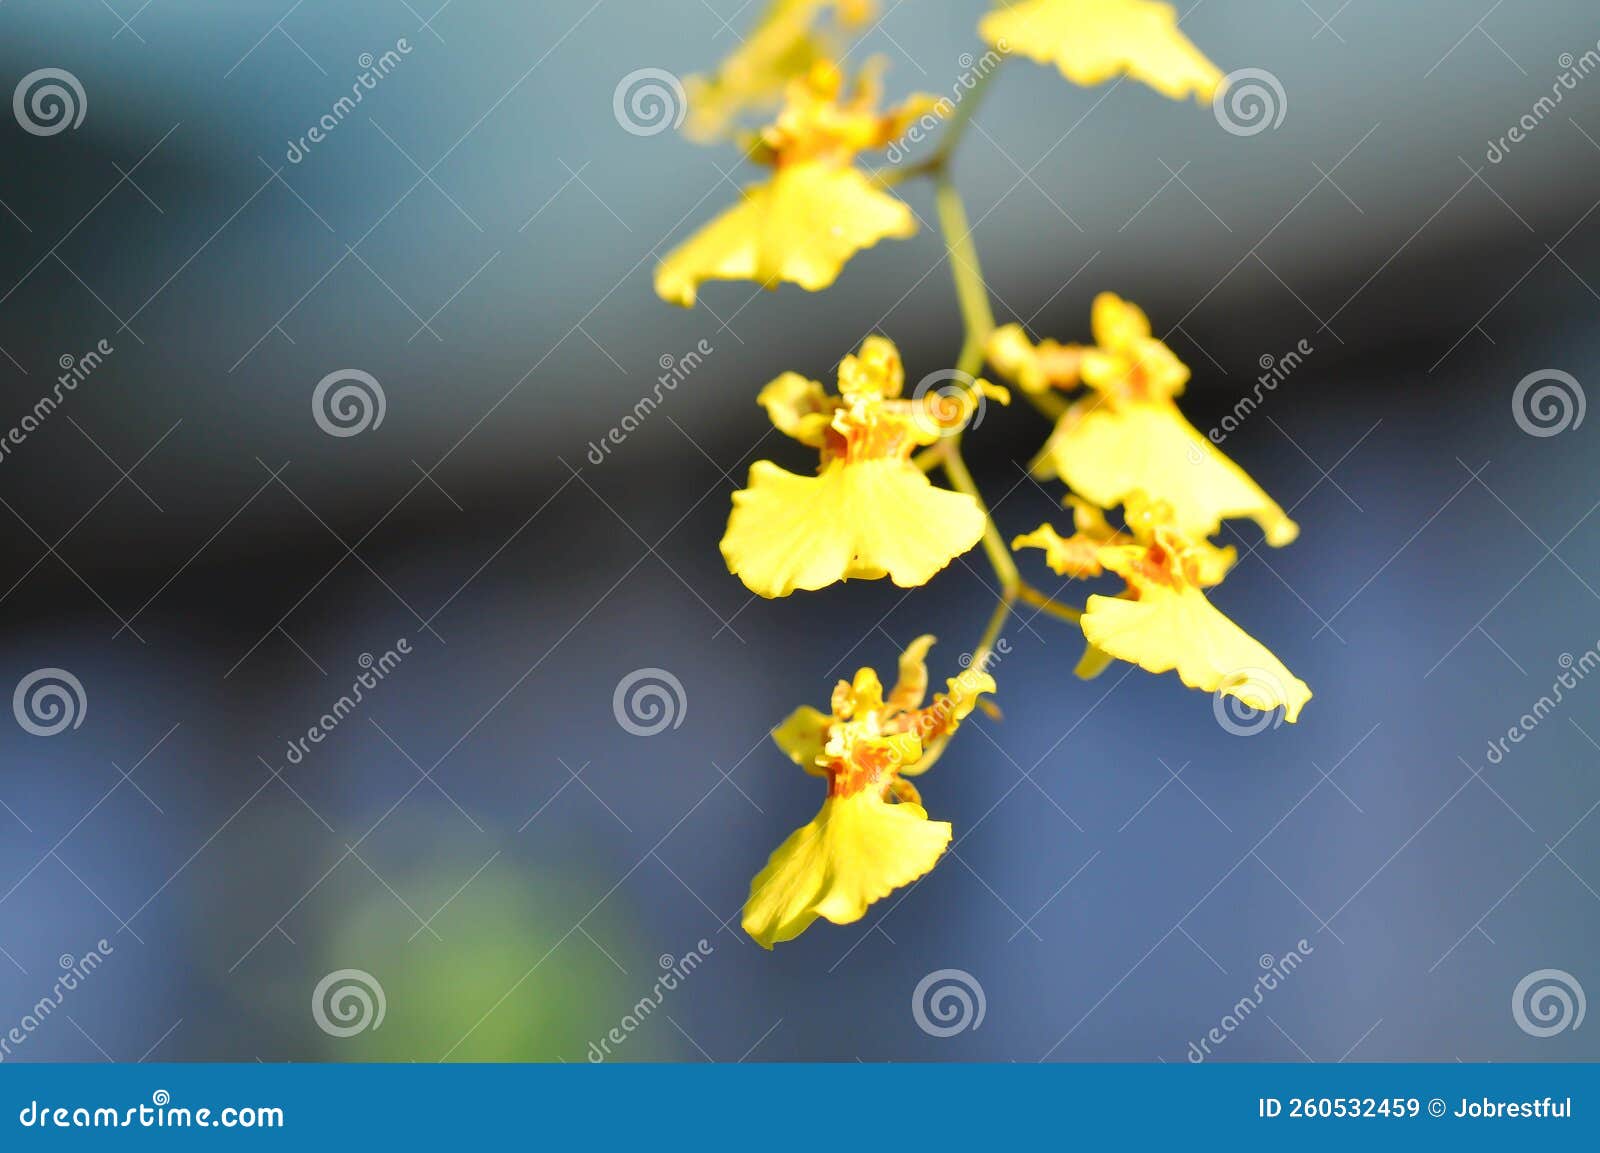 oncidium cheiro, oncidium cheiro kukoo tokyo or oncidium sweet sugar emperor or yellow oncidium orchid  or oncidium cheirophorum